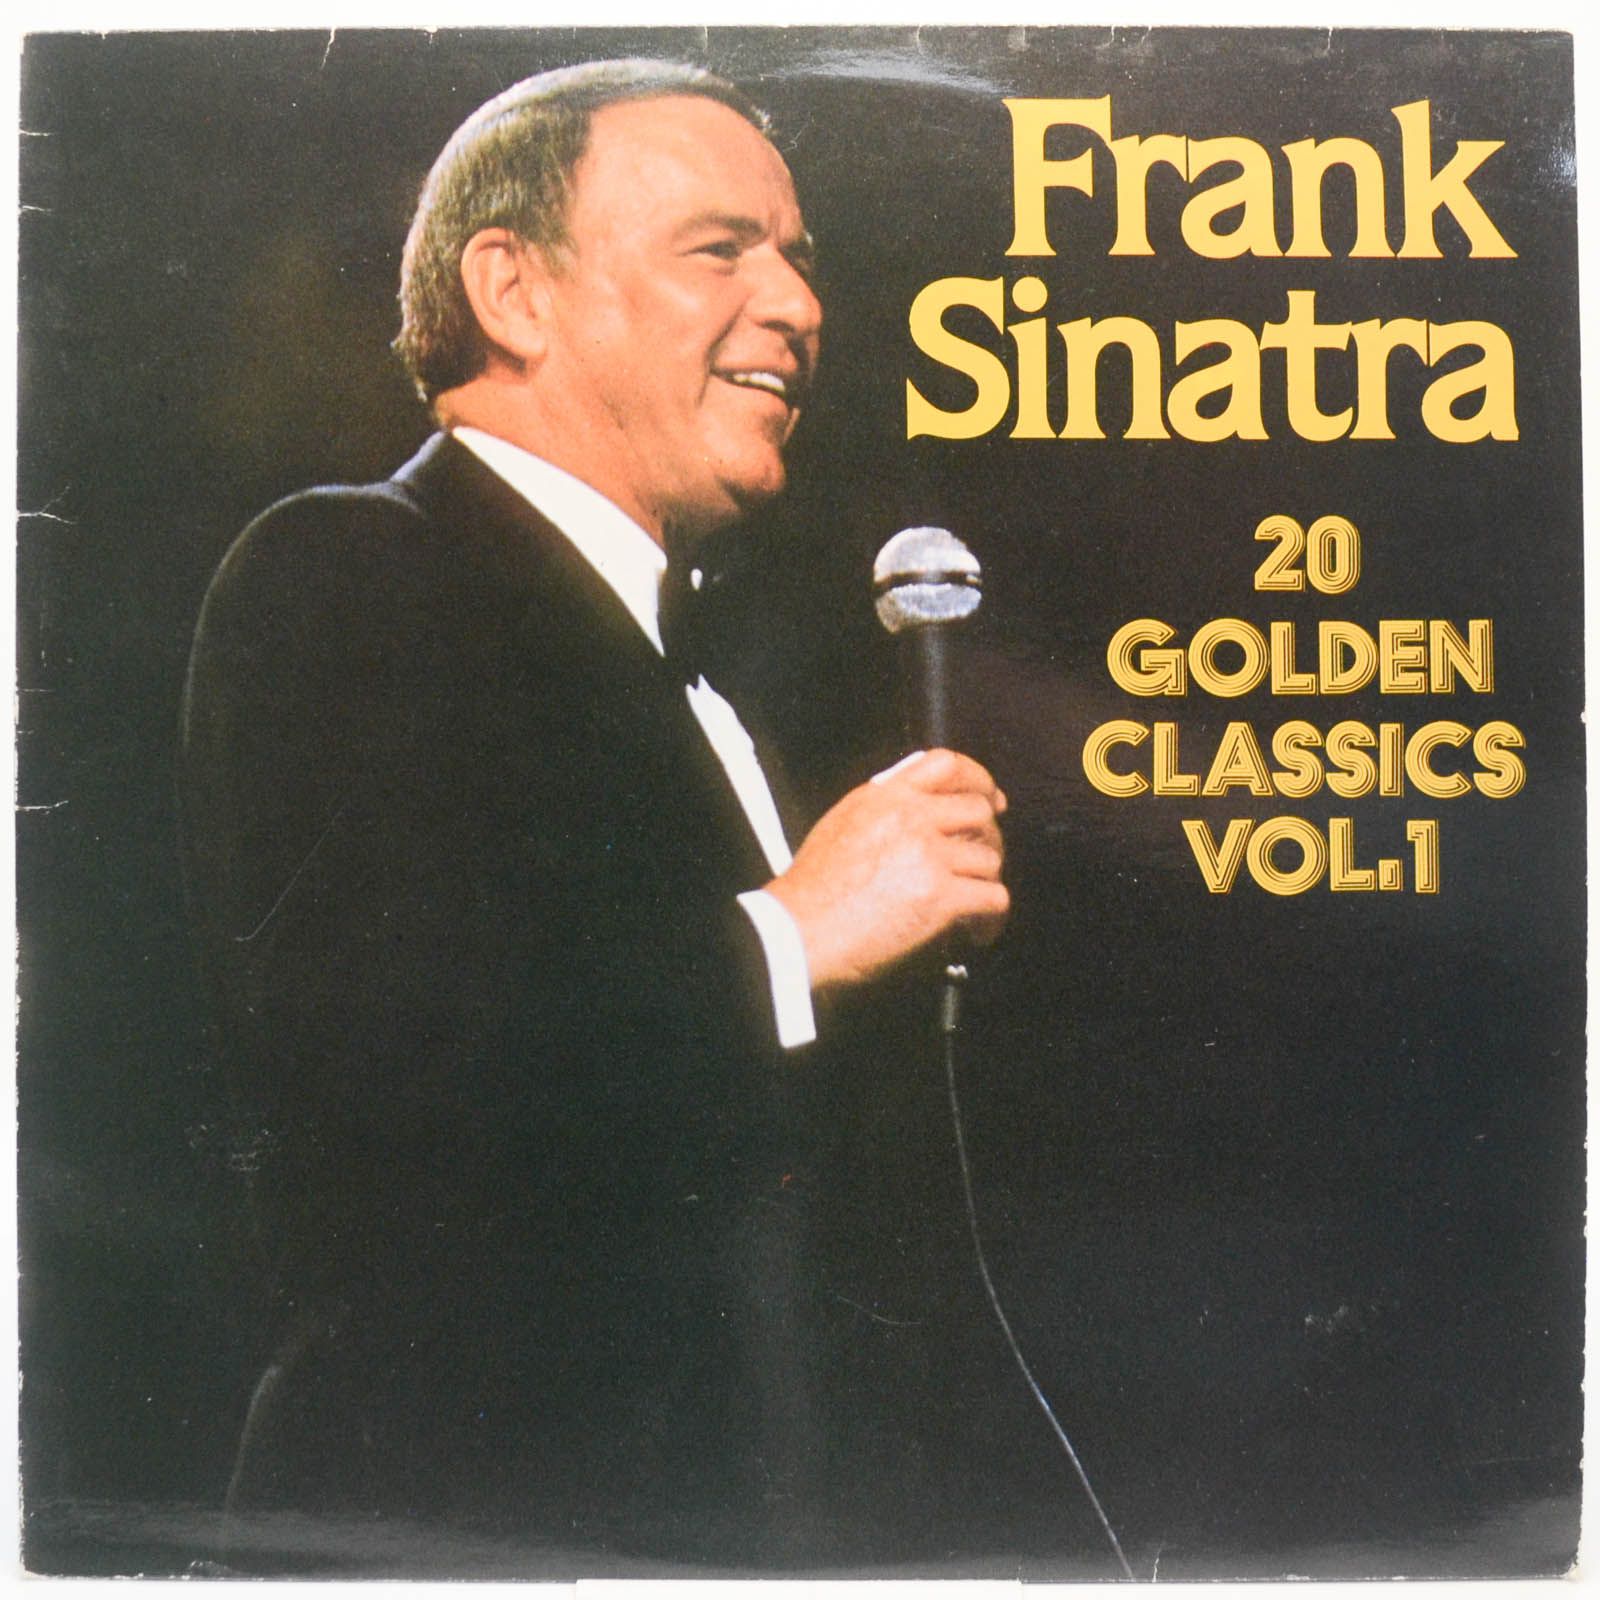 Frank Sinatra — 20 Golden Classics Vol. 1, 1984